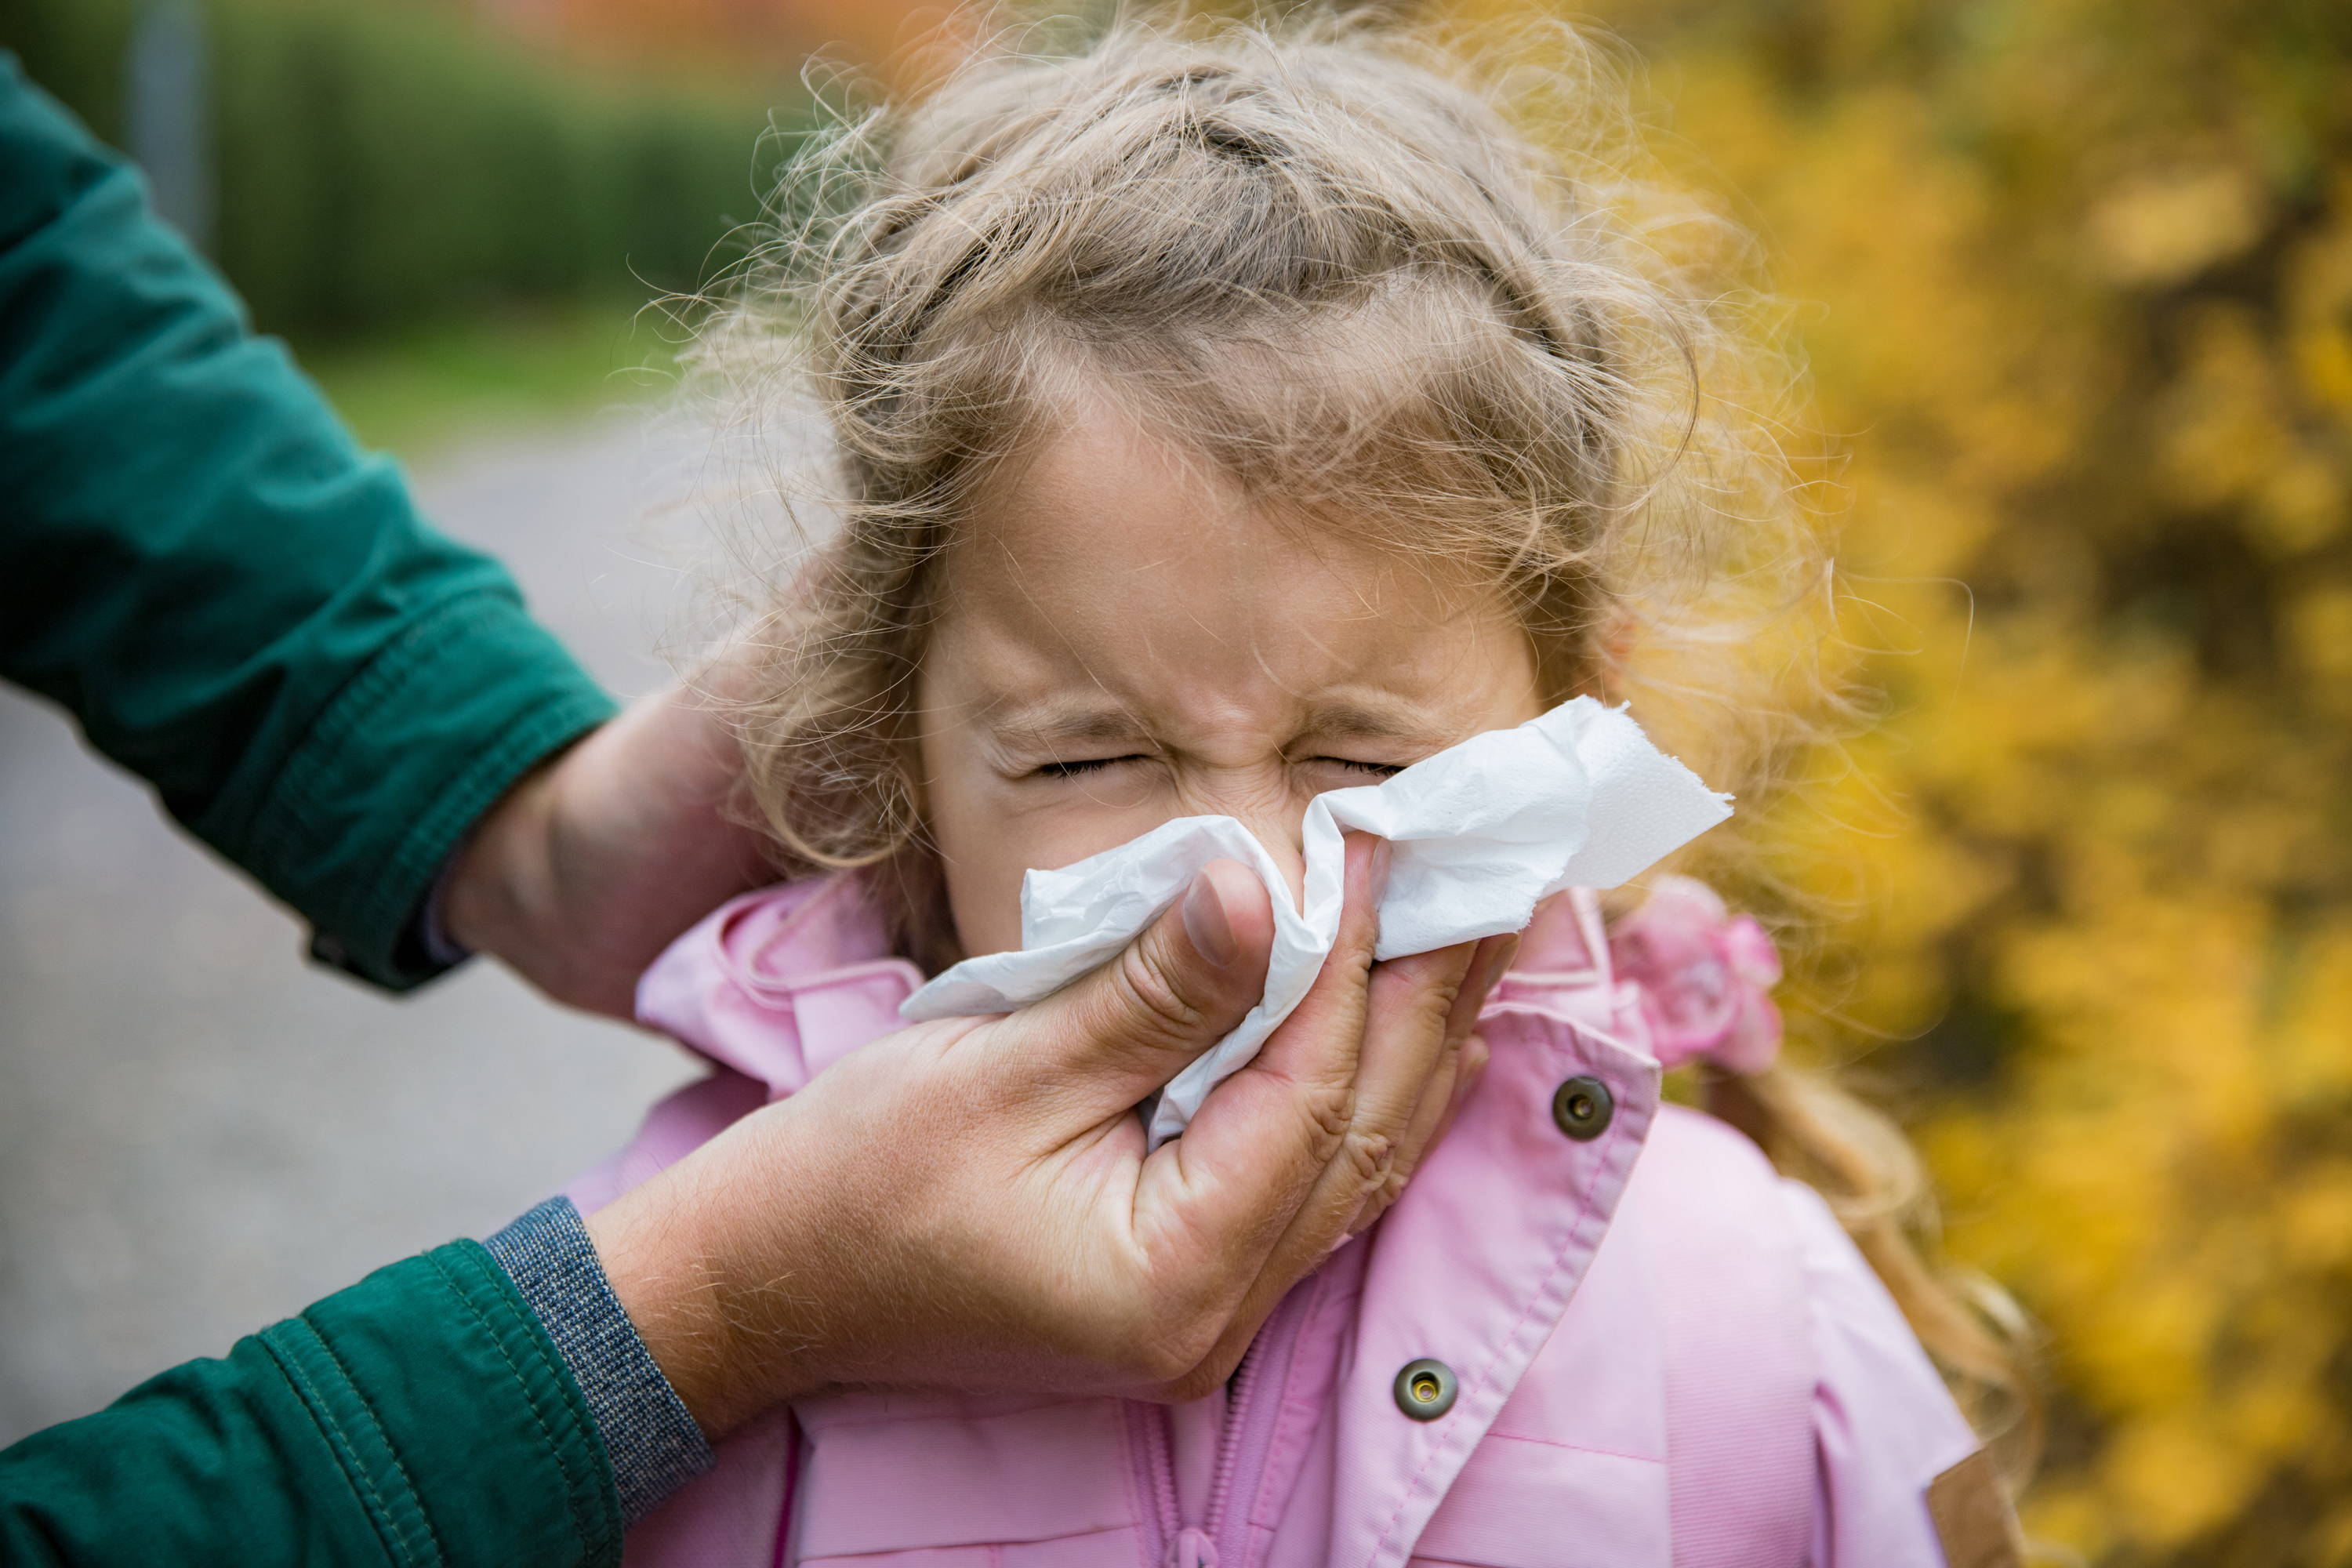 Holčička v růžové bundičce krčí tvář, otec jí drží ubrousek pod nosem a pomáhá jí se vysmrkat – jsou venku, může mít alergii na pyl